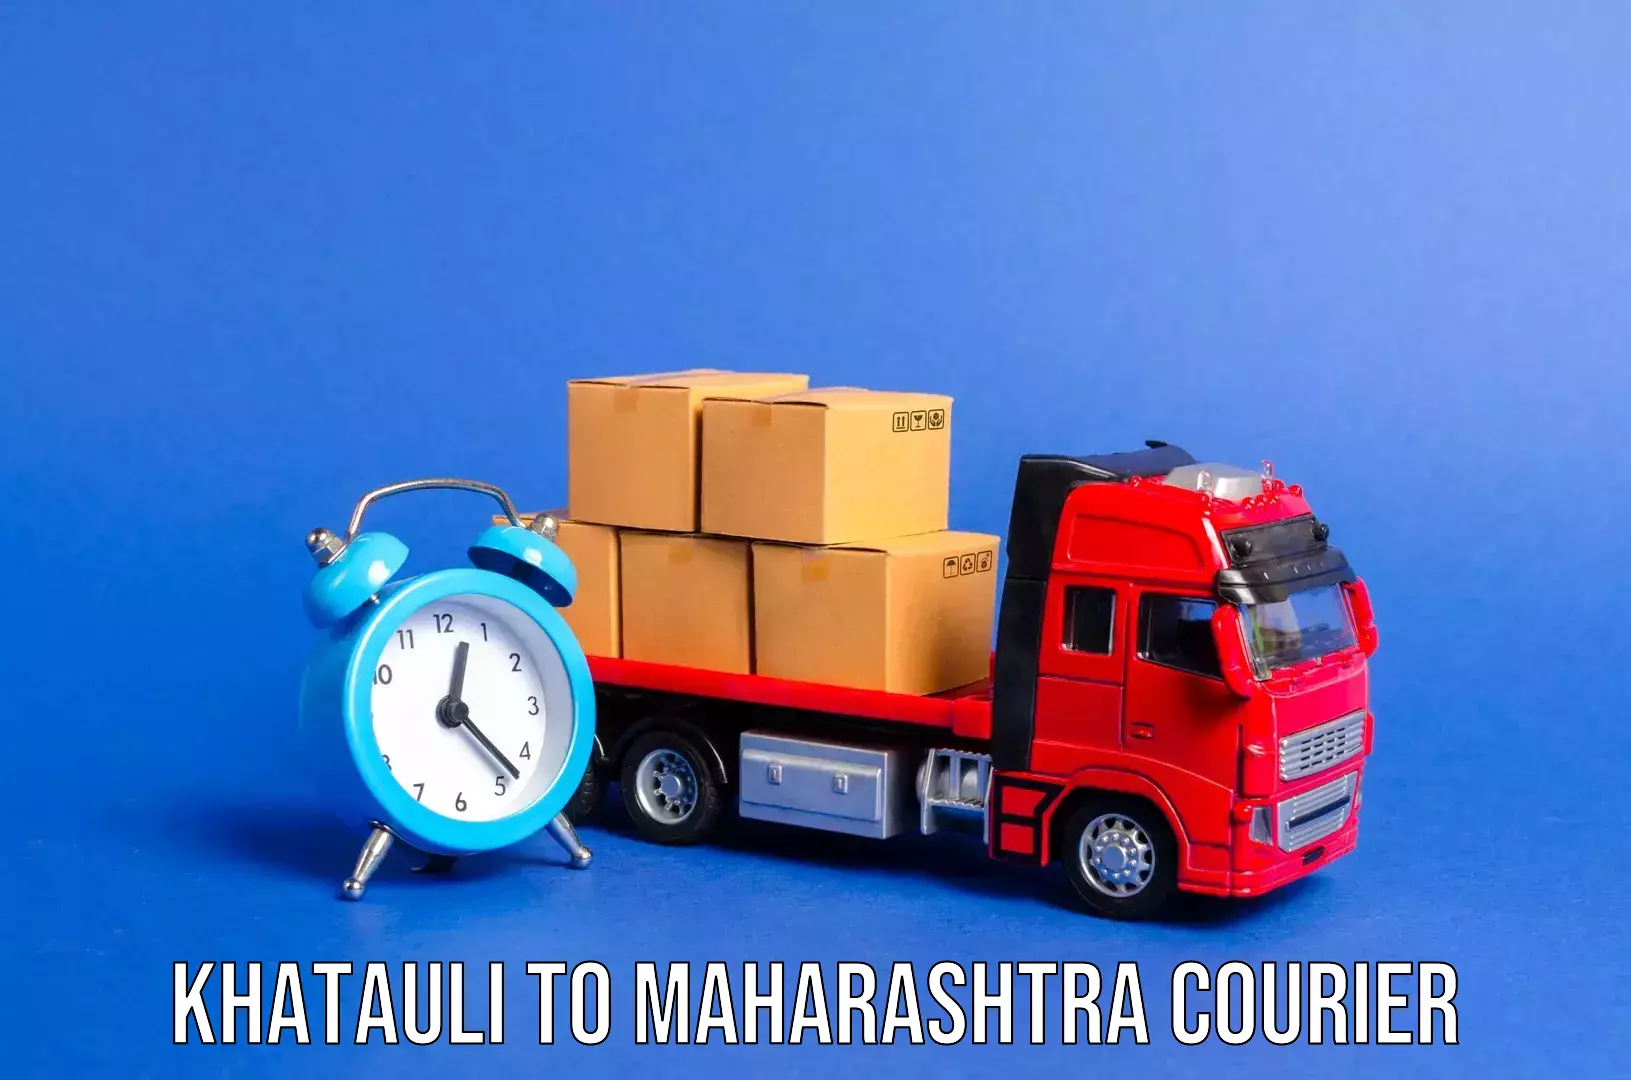 Luggage transport solutions Khatauli to Maharashtra